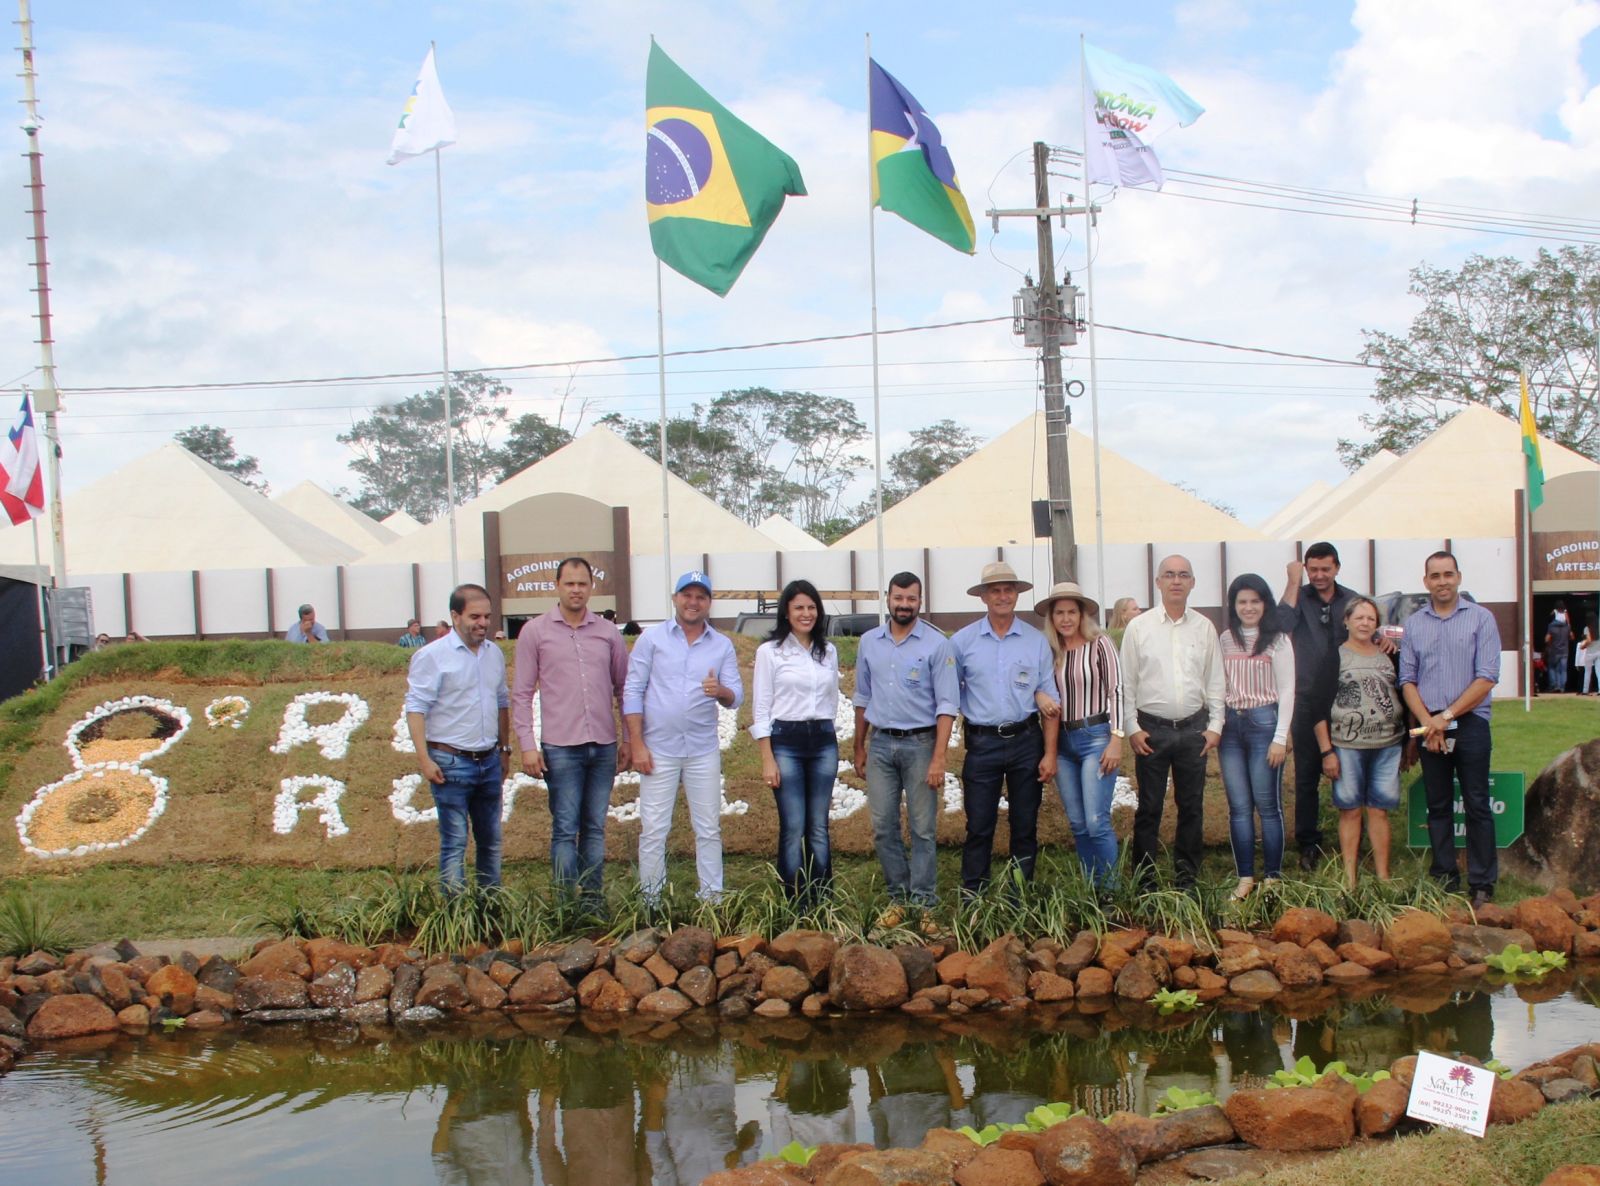 MAIS DE 500 EXPOSITORES E MOVIMENTO DE NEGÓCIOS ATRAÍRAM GRANDE PÚBLICO AO 8º RONDÔNIA RURAL SHOW - News Rondônia